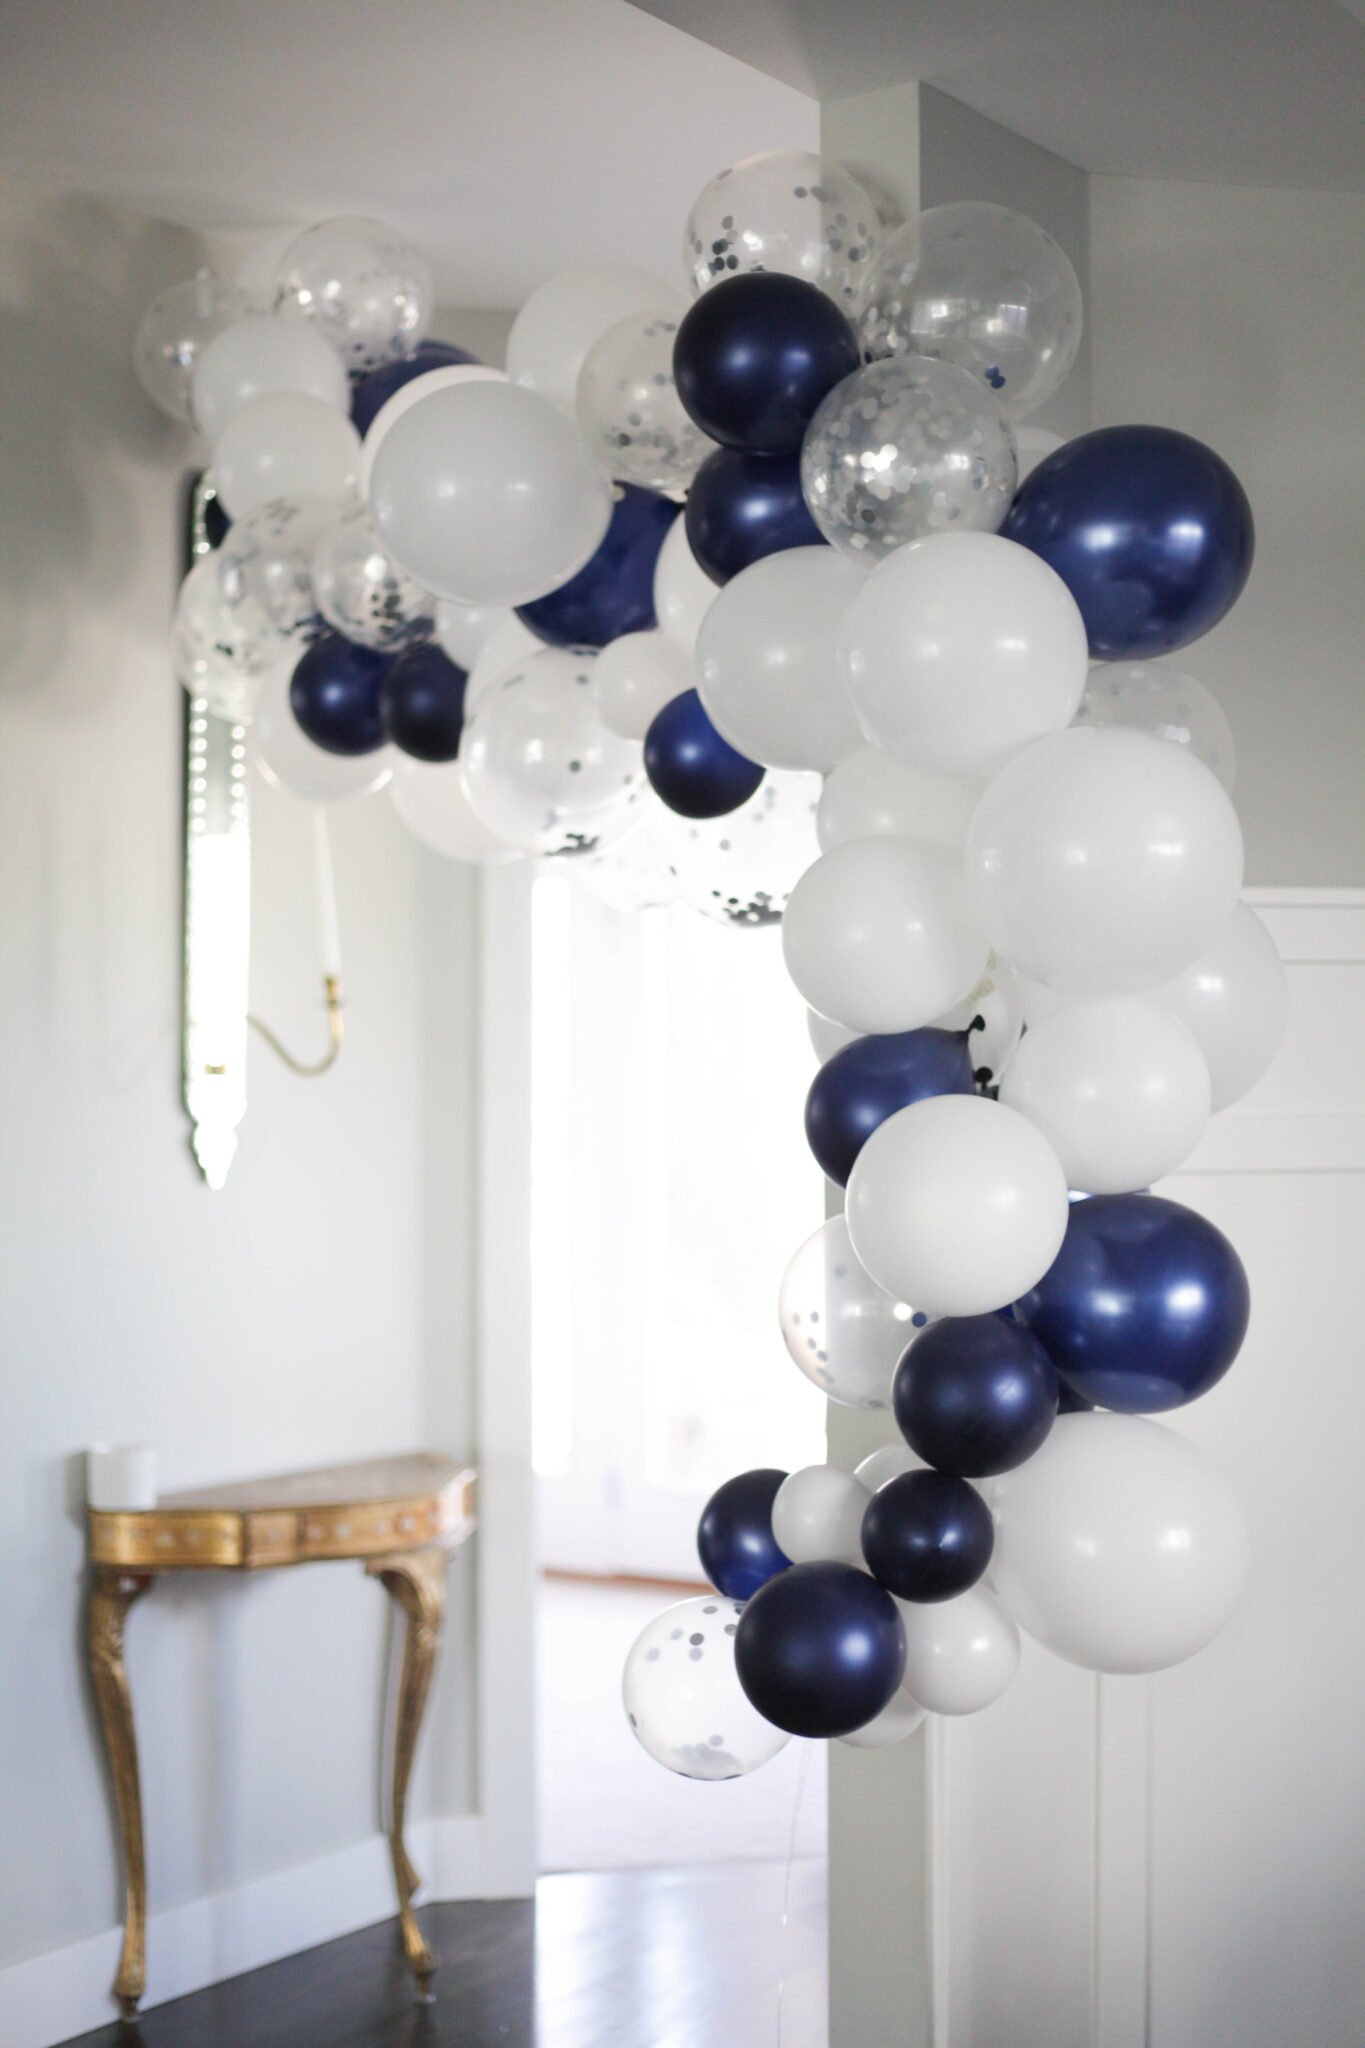 Arche de ballons licorne – Joy event